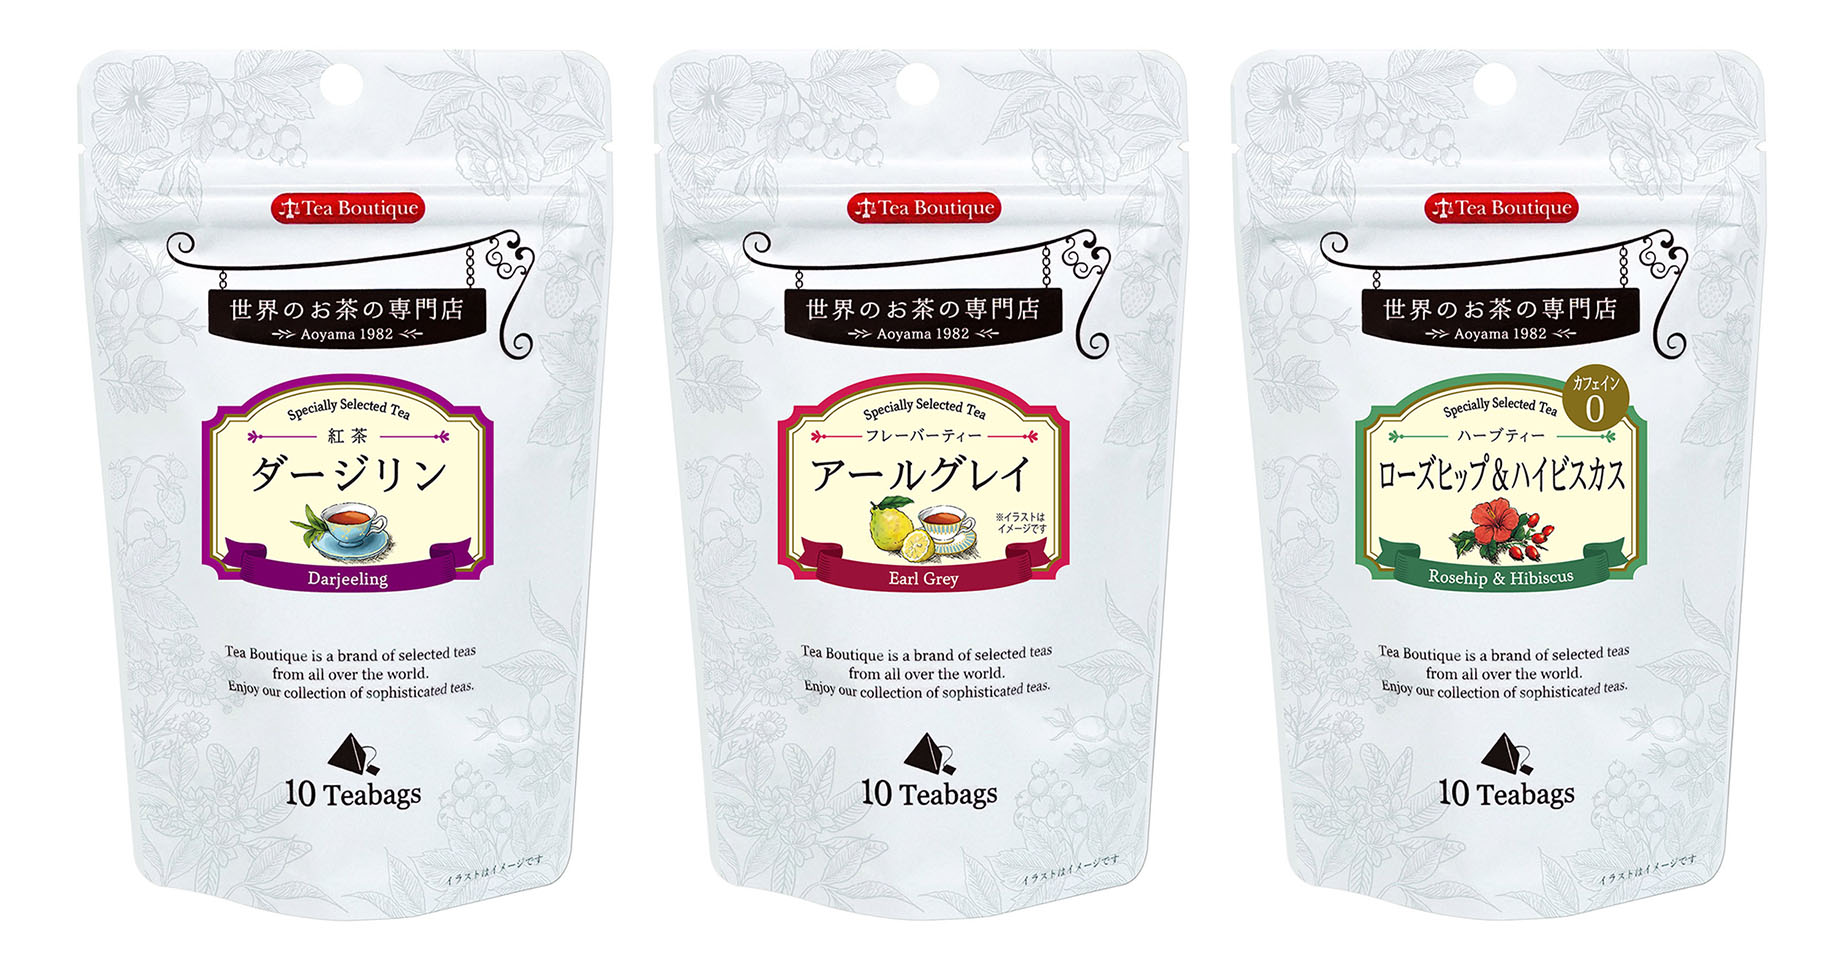 7年ぶりの大幅パッケージリニューアル 新商品4種も追加 世界のお茶シリーズ「ティーブティック・ティーバッグ」発売 | ニュース | 日本緑茶センター